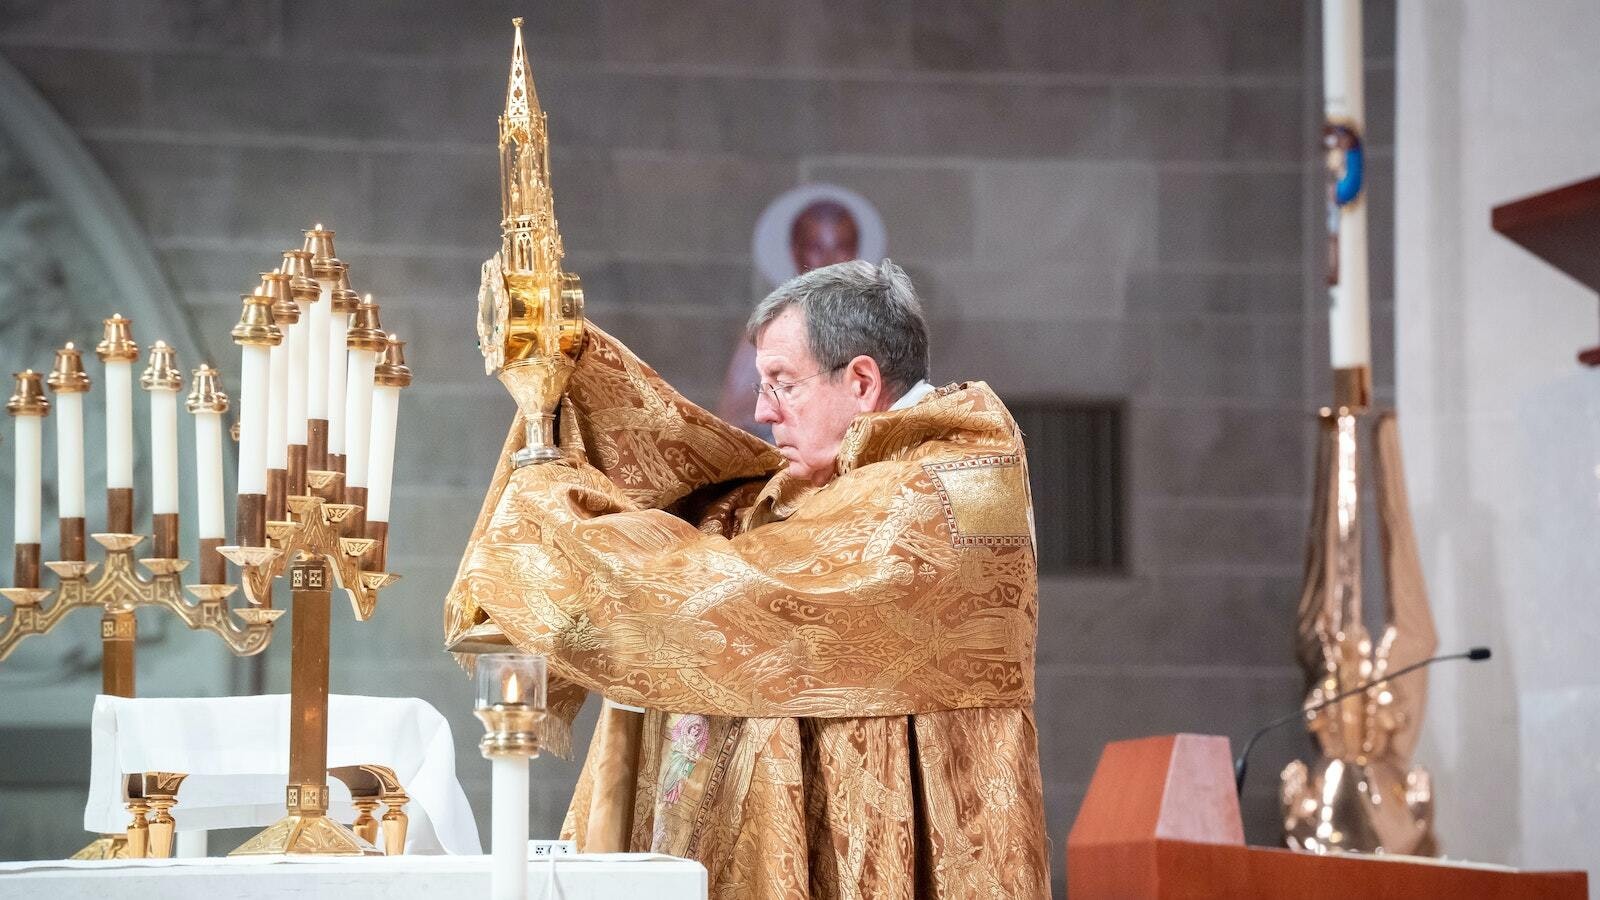 El Arzobispo Vigneron eleva la custodia con la Sagrada Eucaristía durante una hora santa para cerrar un Año de Oración por las Vocaciones Sacerdotales en la Arquidiócesis de Detroit el 4 de junio de 2022. (Valaurian Waller | Detroit Catholic)